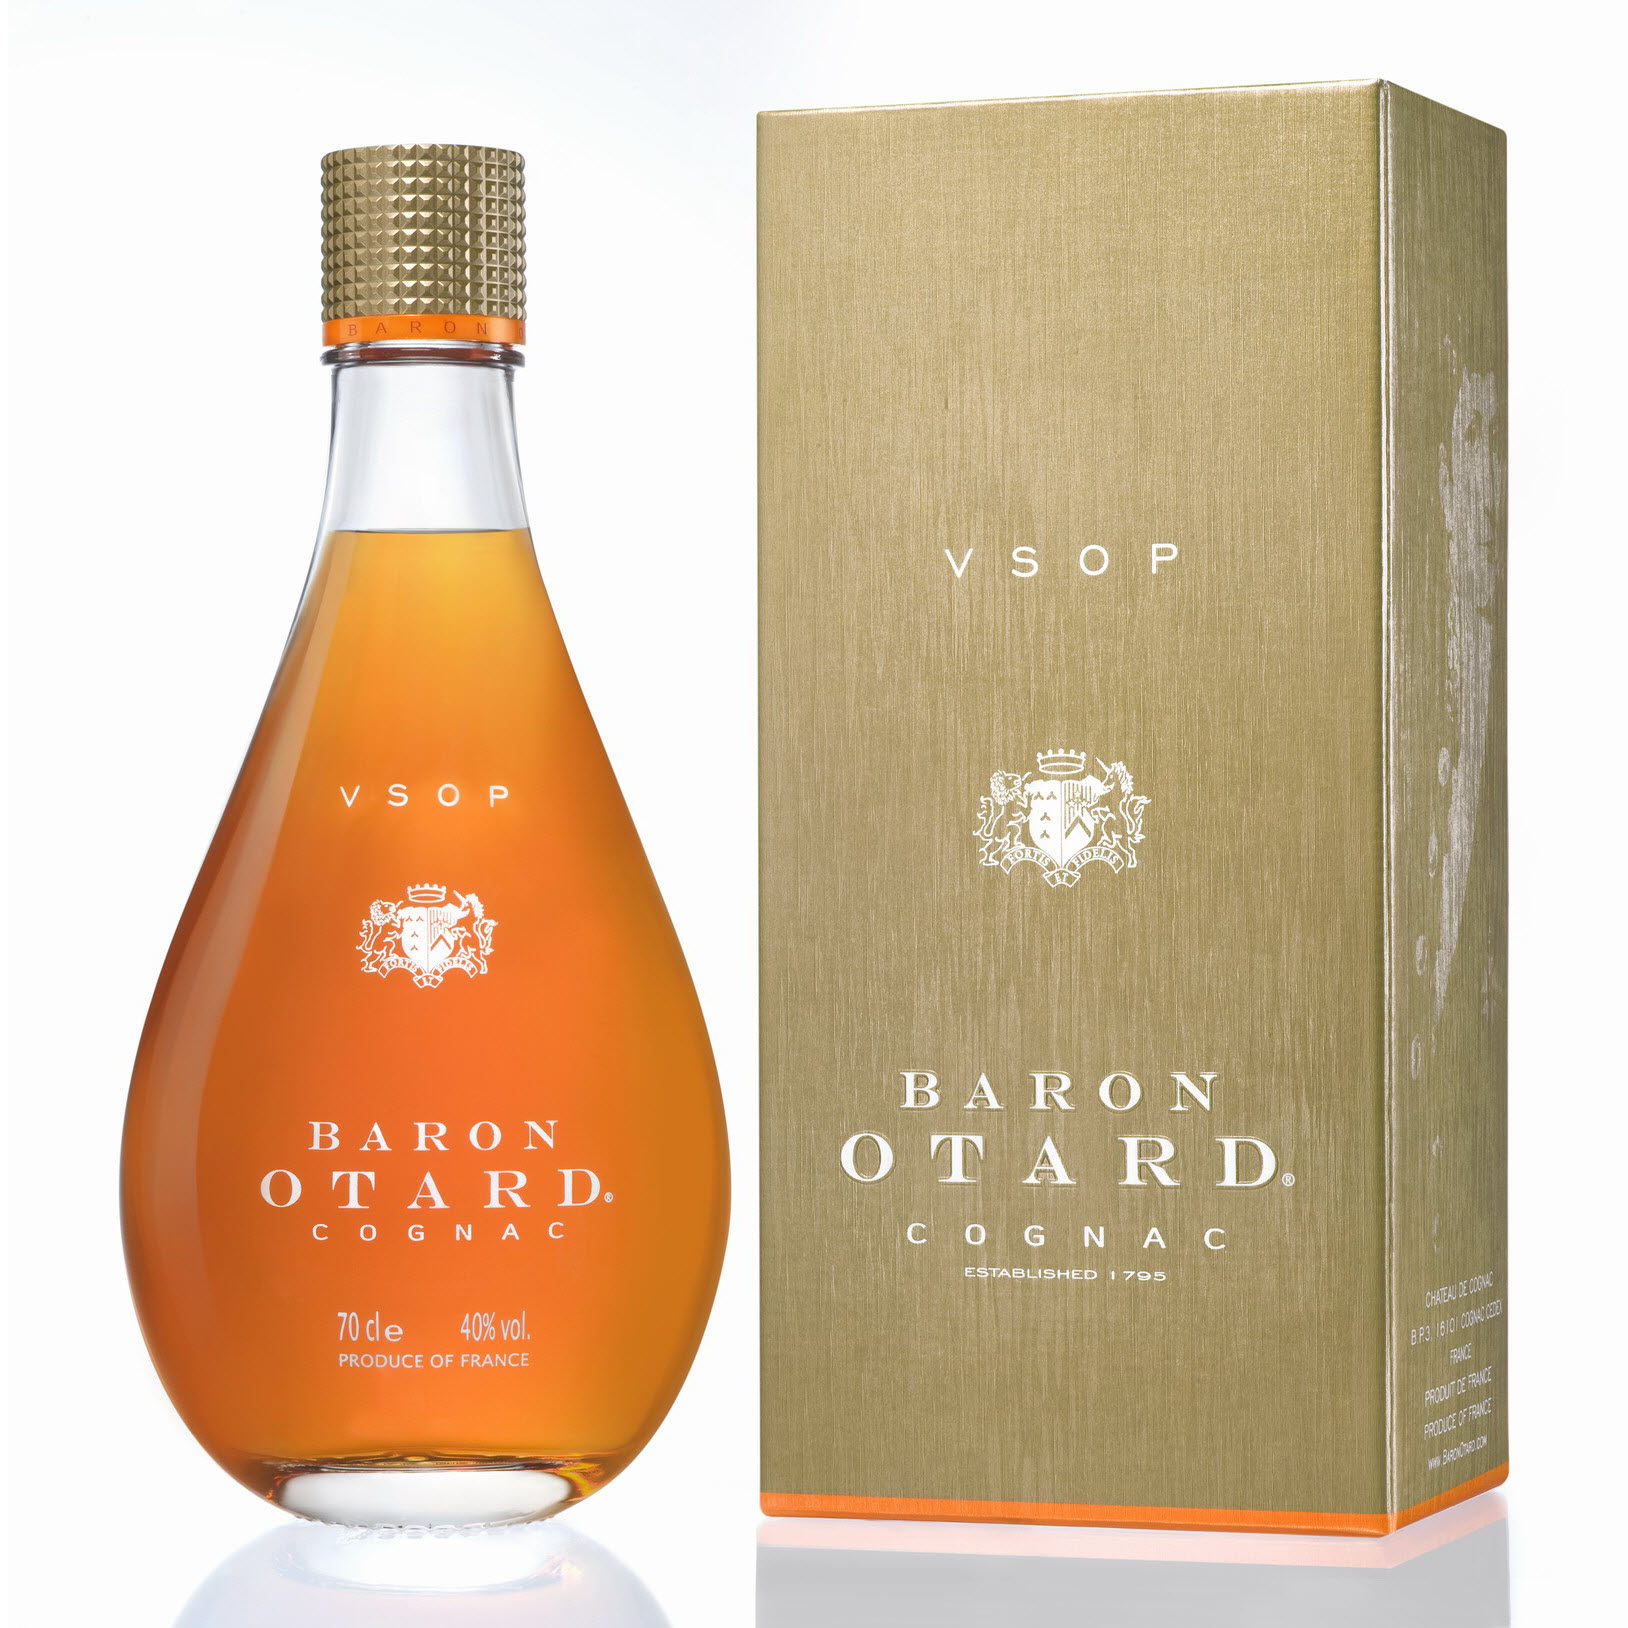 Otard VSOP Baron cognac (0,7L / 40%)